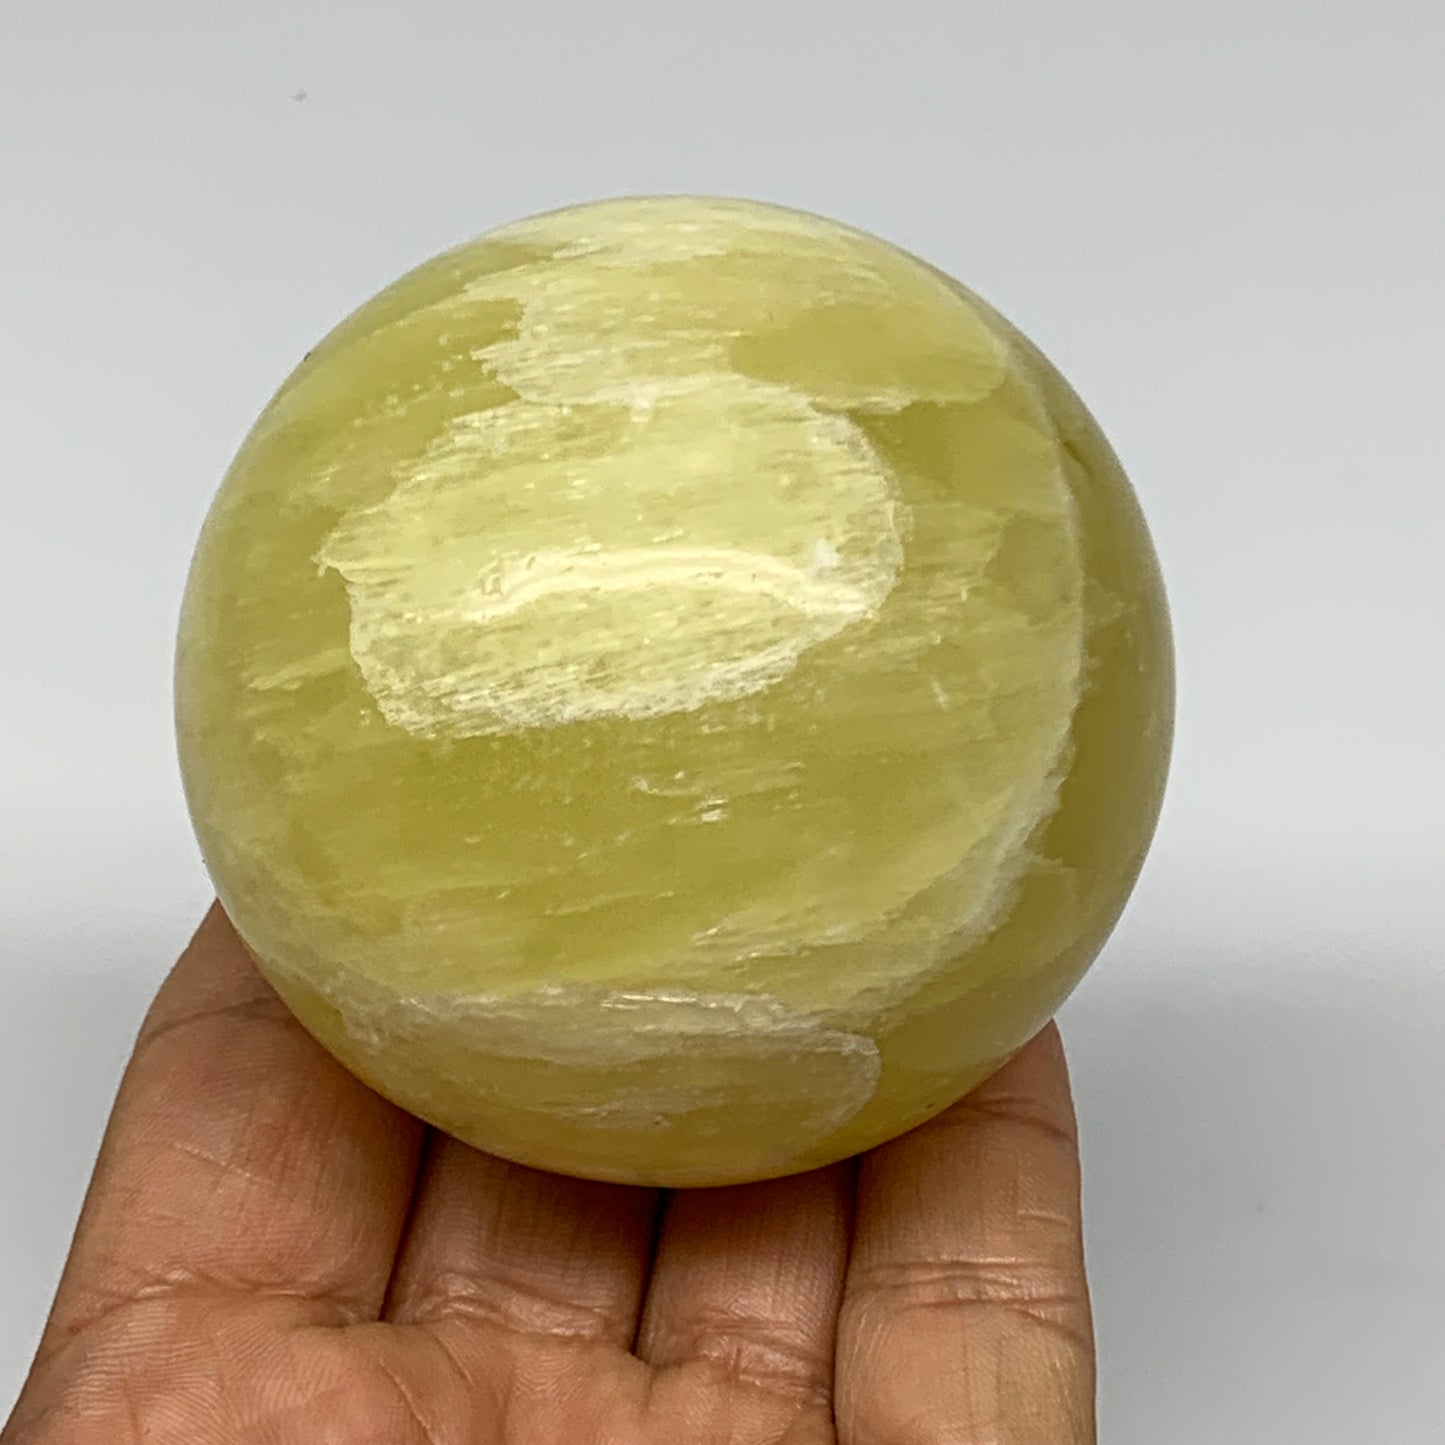 0.925 lbs,2.5"(64mm) Lemon Calcite Sphere Gemstone,Healing Crystal,B26056